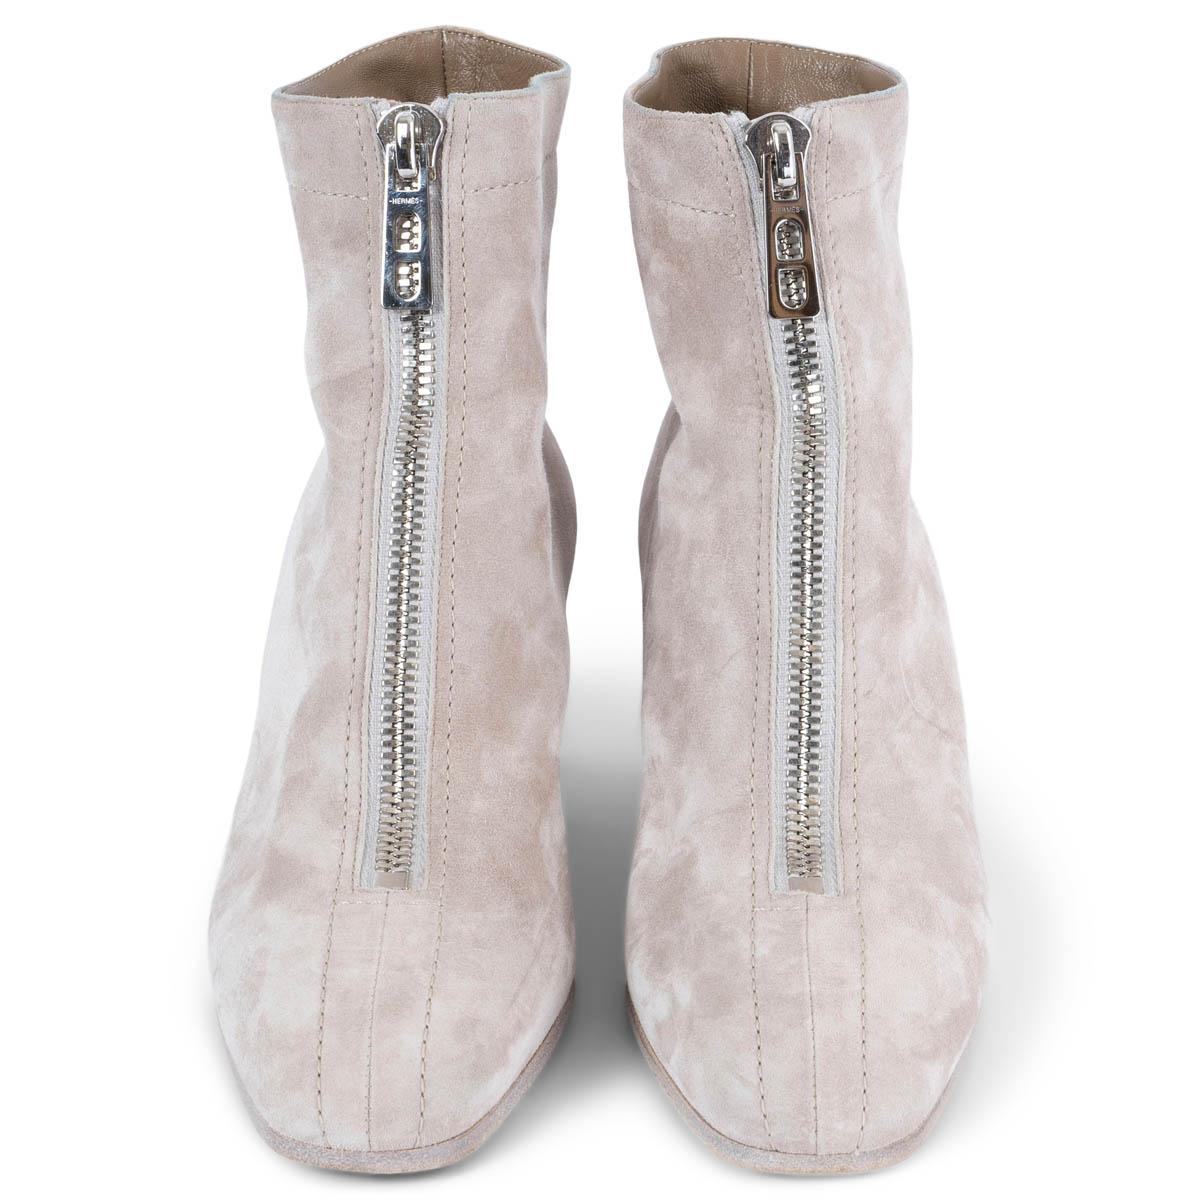 100% authentique Hermès Becky ankle-boots in Beige Grege (nude) suede. Il est doté d'un talon en cuir superposé et d'un détail en métal argenté. Ouvert avec fermetures à glissière vers le bas  l'avant. Doublure en cuir. Ils ont été portés et sont en